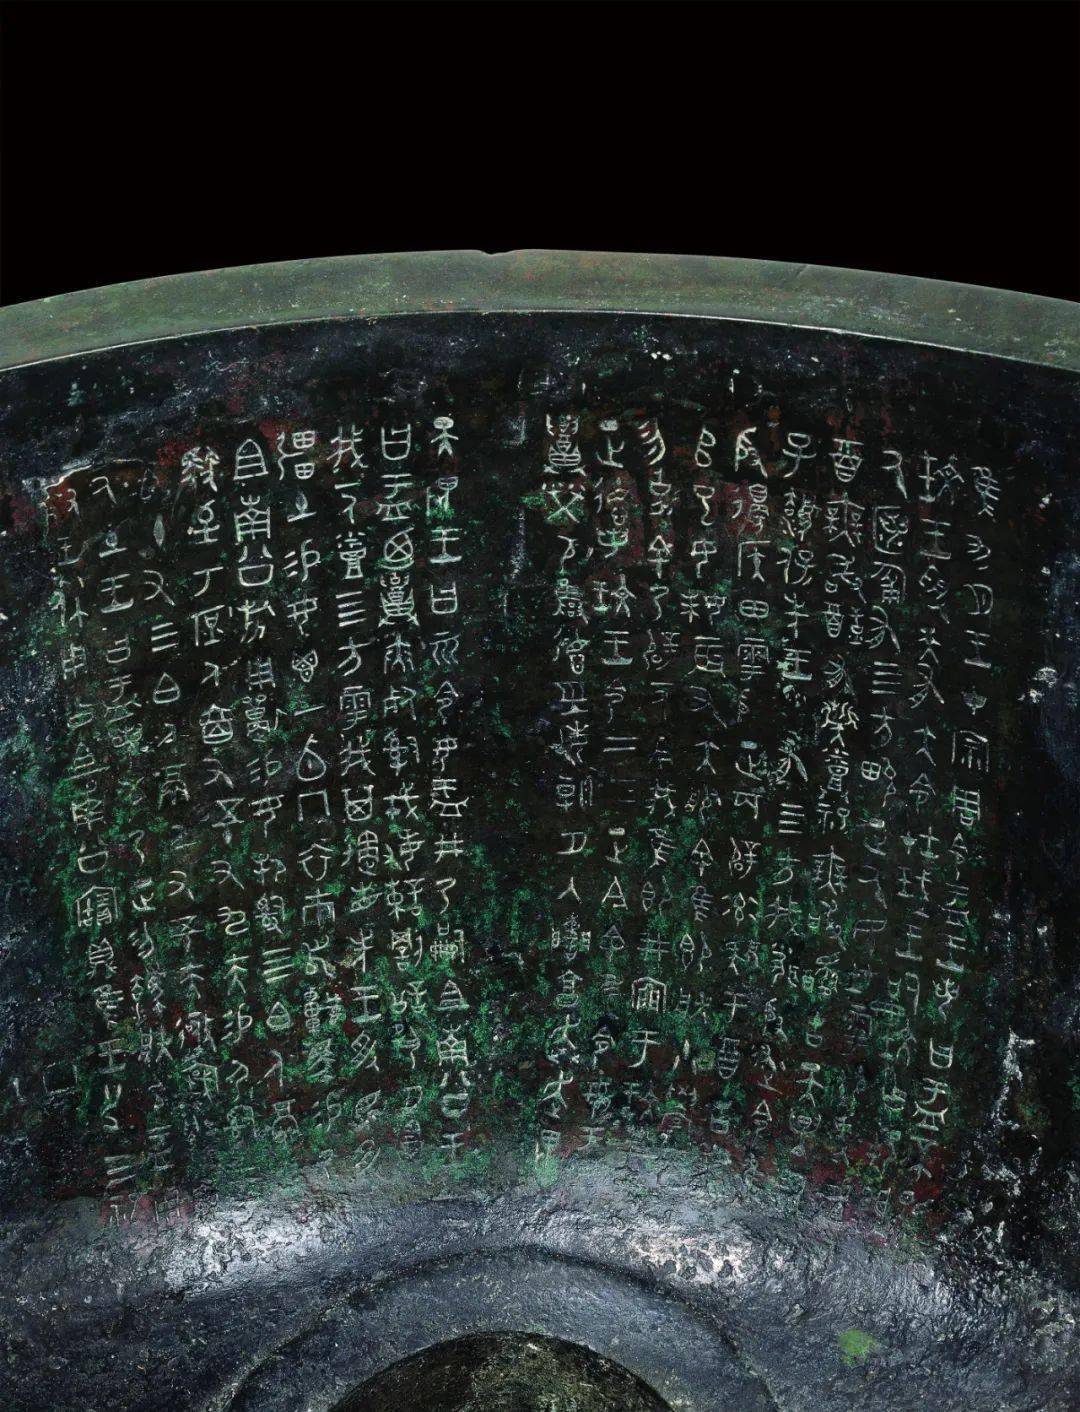 商代青铜器铭文对照表图片